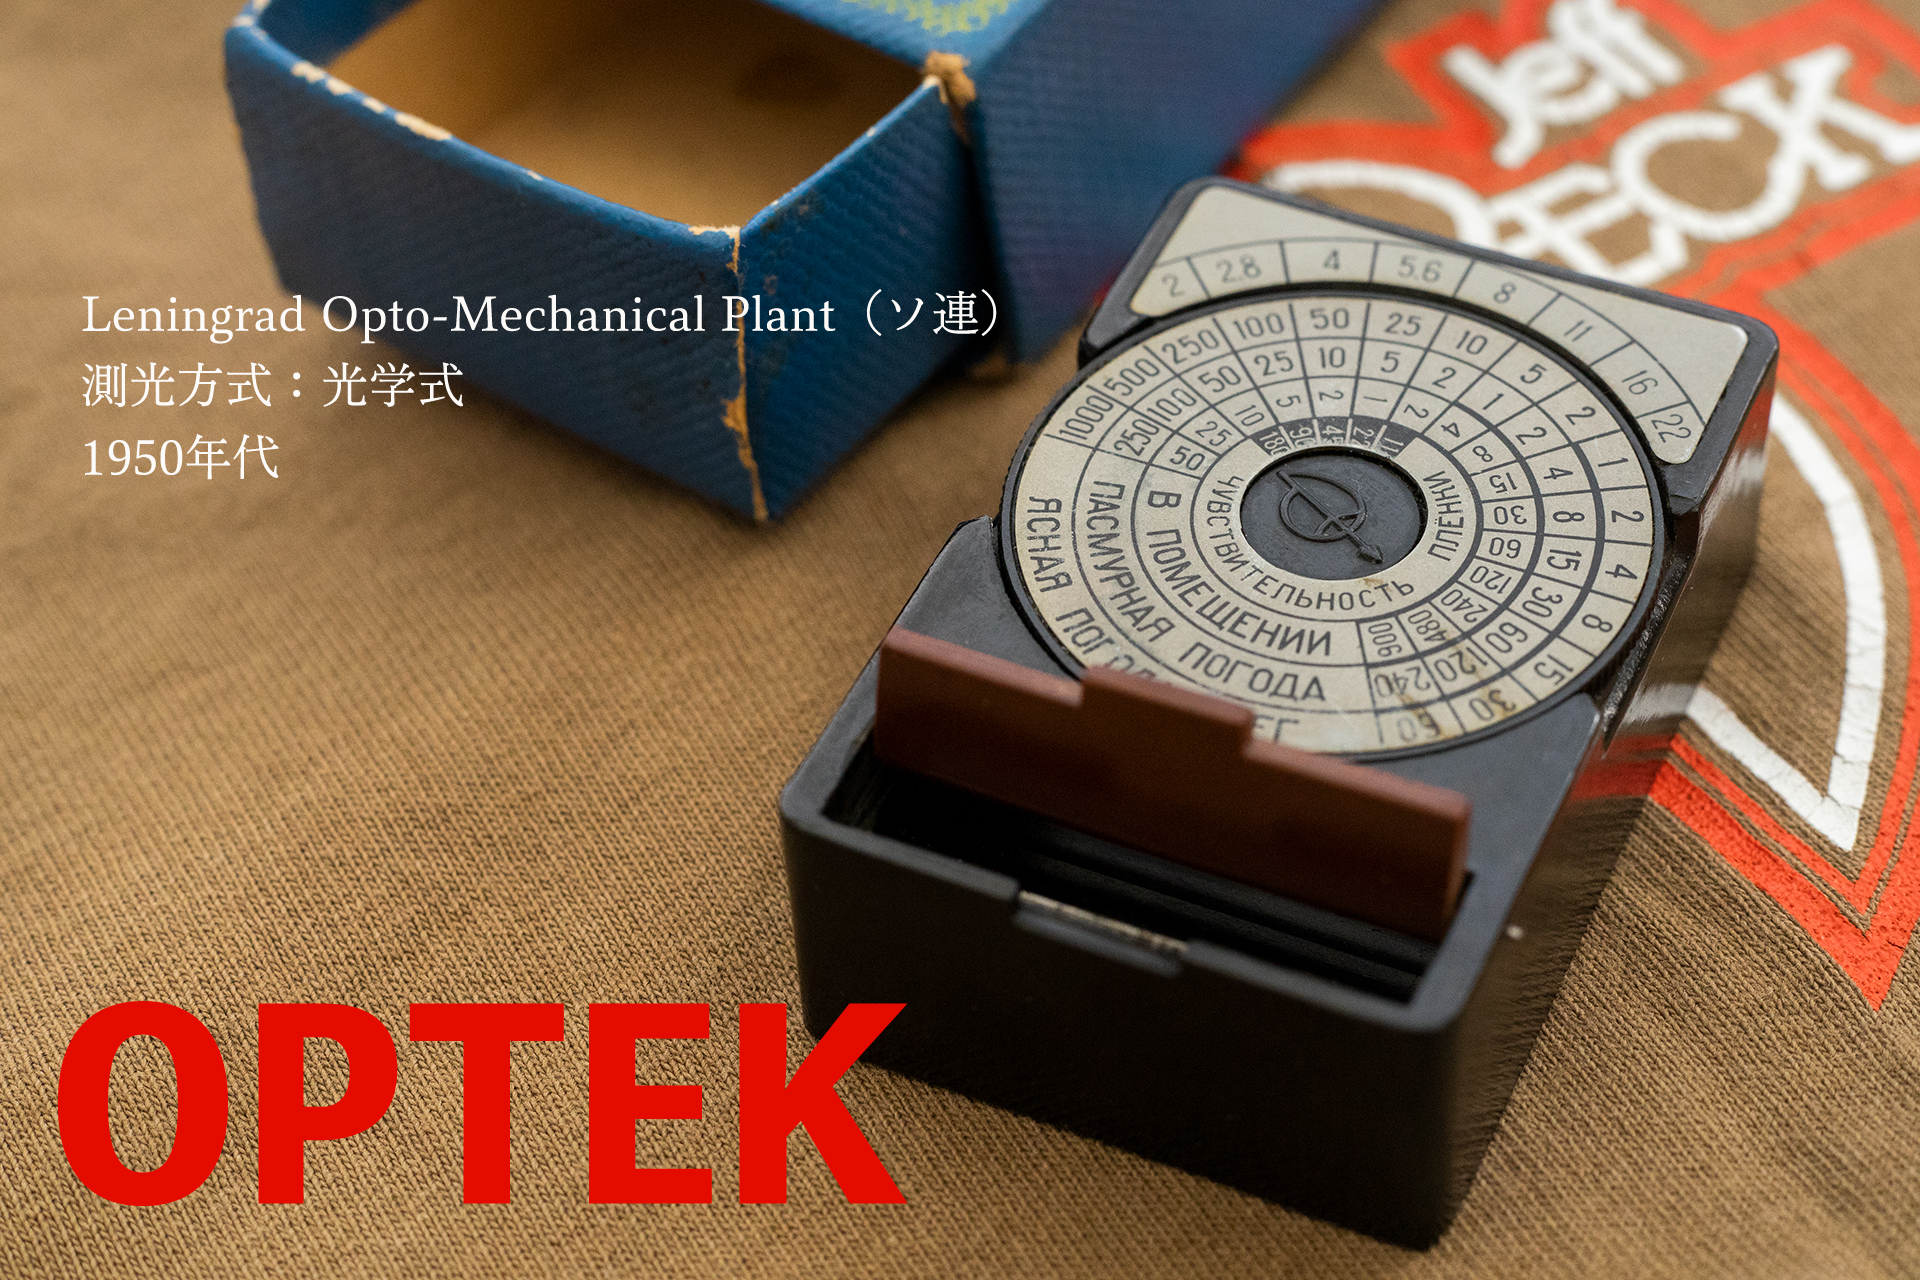 OPTEK / Leningrad Opto-Mechanical Plant（ソ連）